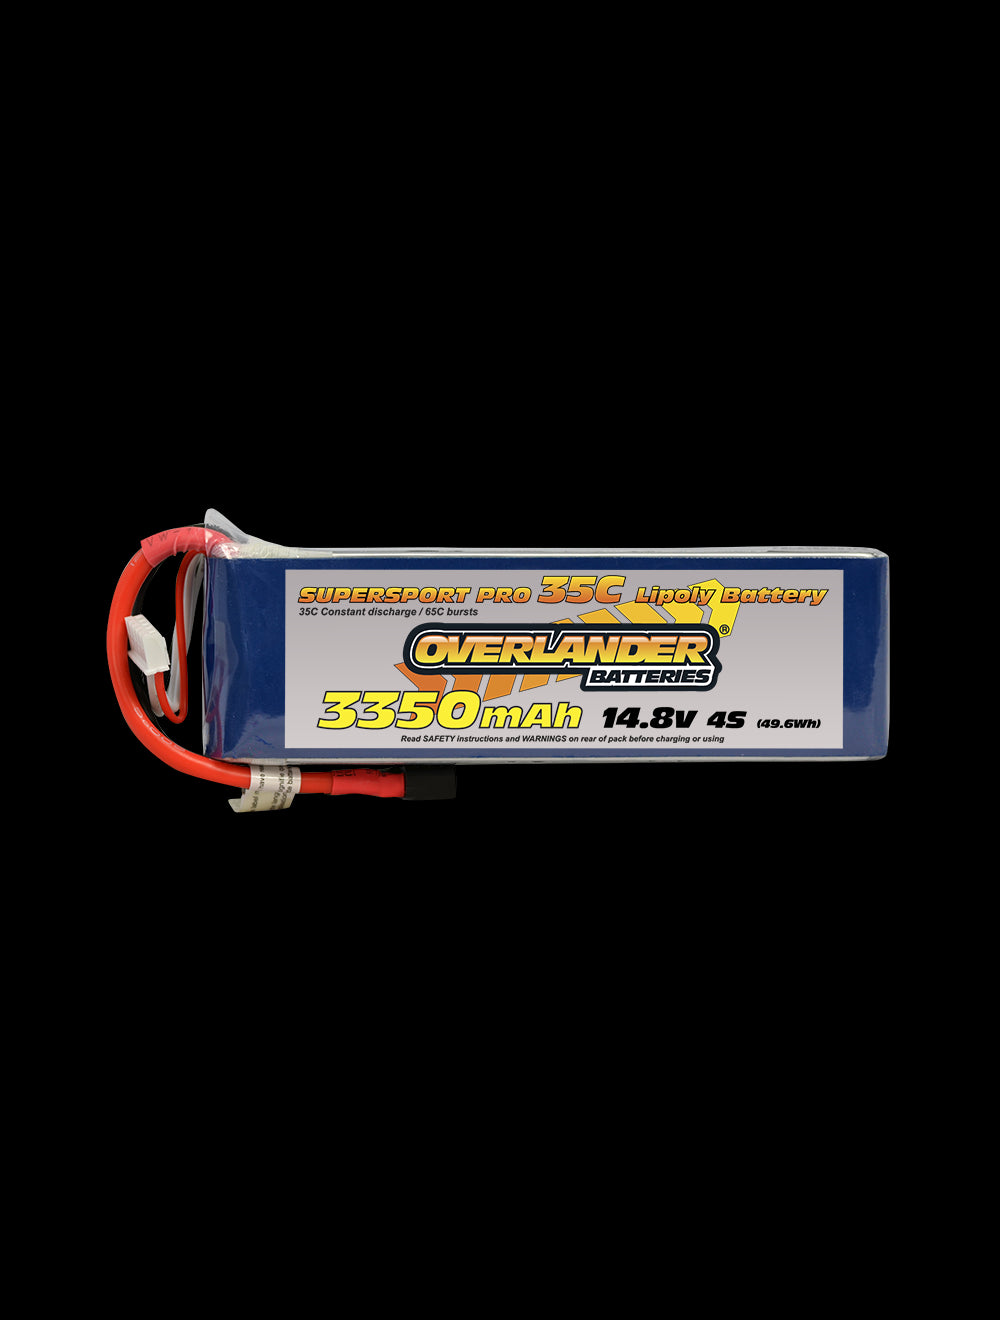 Overlander 3350mAh 14.8V 4S 35C Supersport Pro LiPo Battery - EC3 Connector 2571